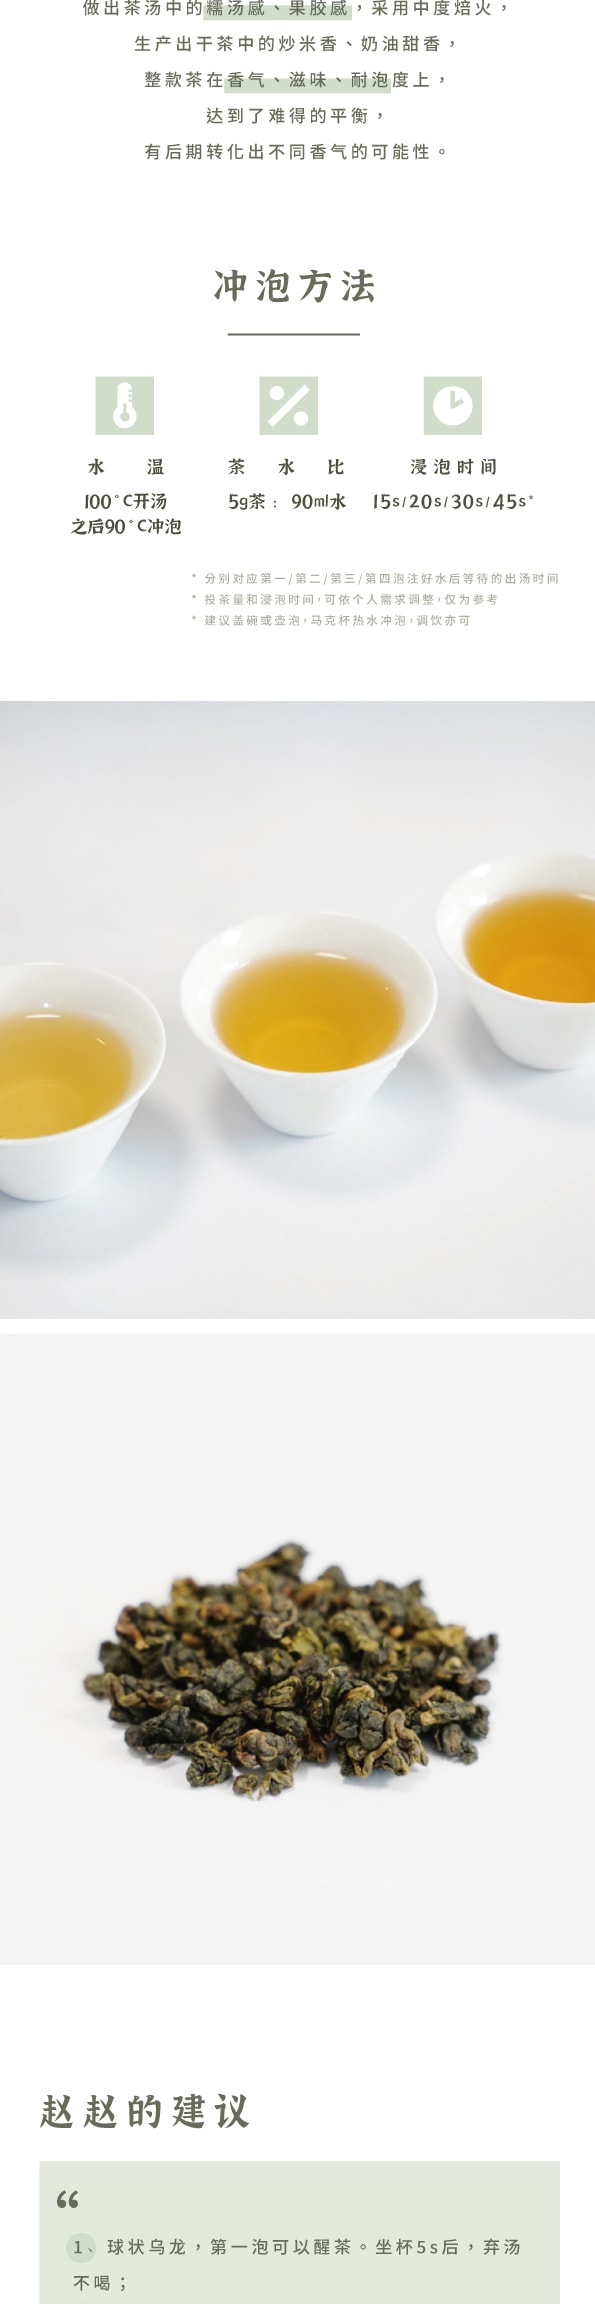 美國 趙趙的茶 ZhaoTea 凍頂烏龍 台灣台中 經典烏龍茶 炒米香 湯感溫和 試飲三連泡 15g (5gx3)